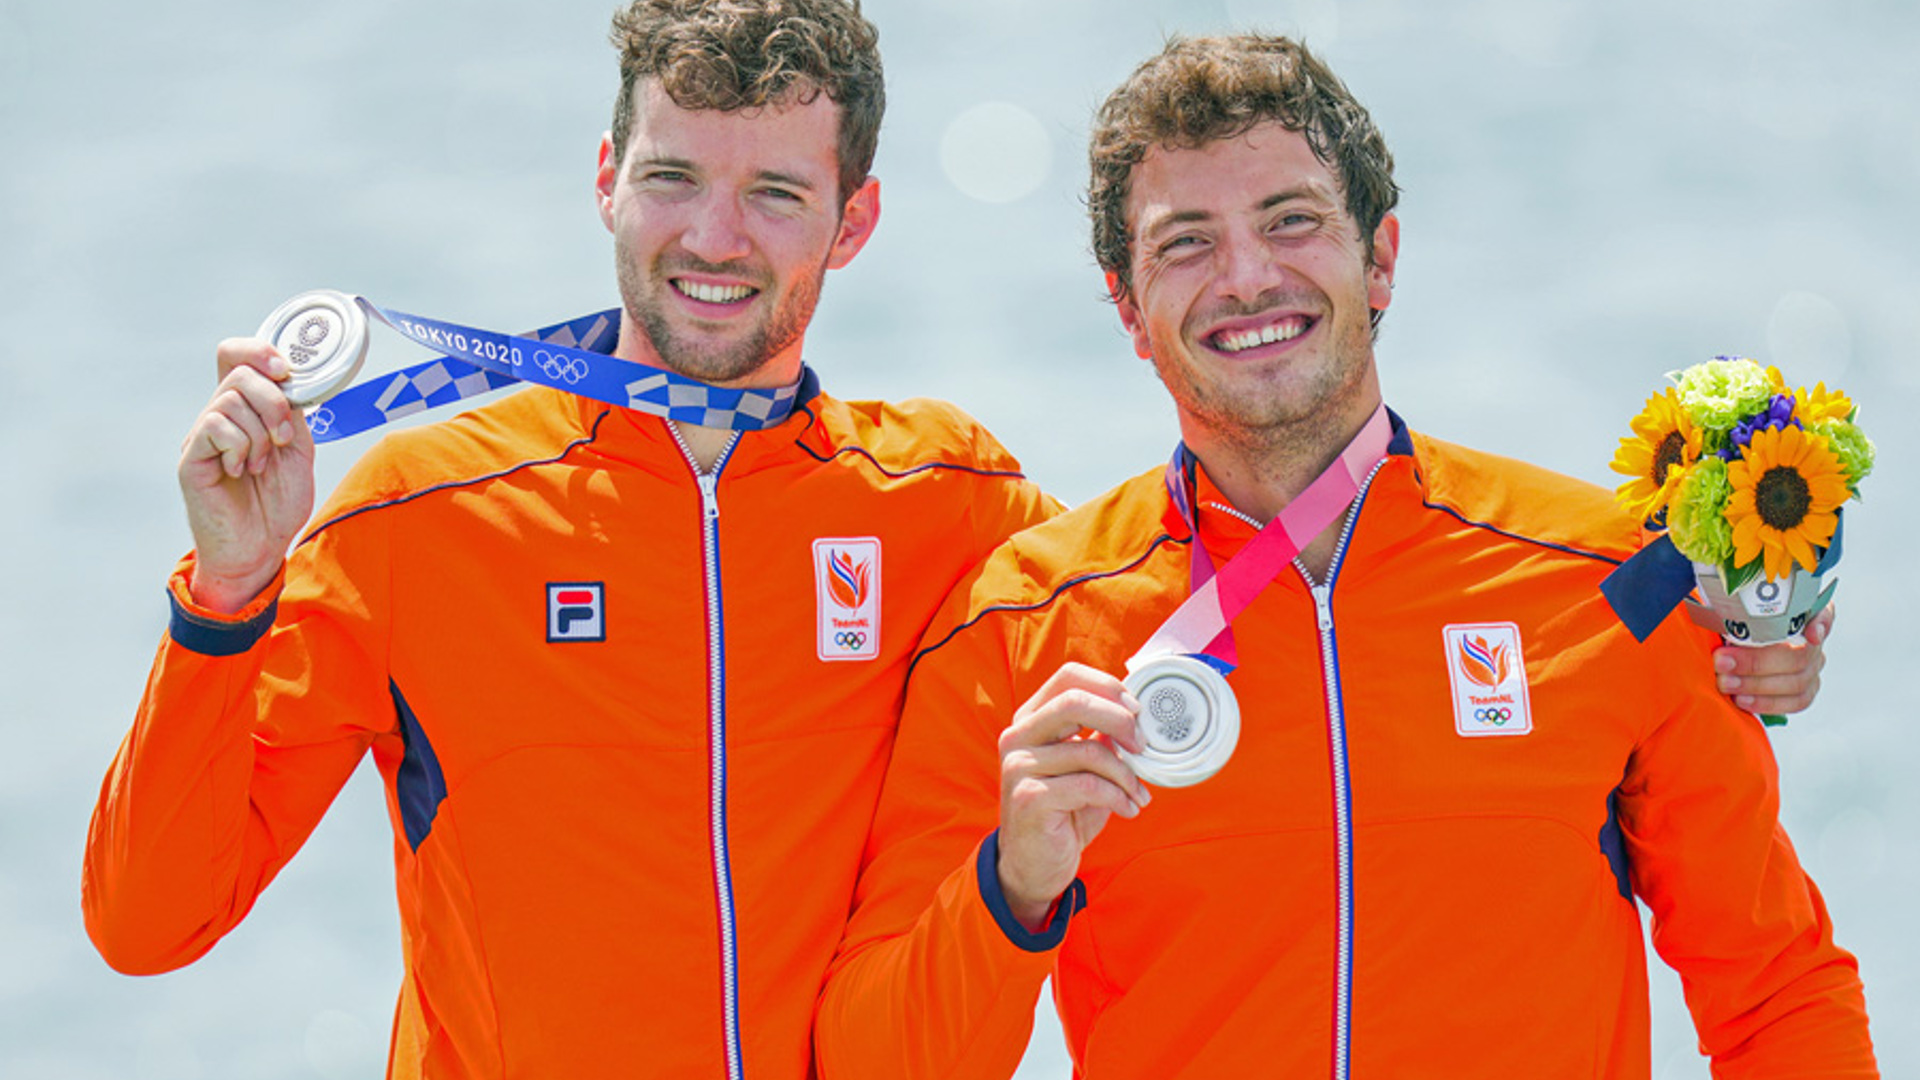 Twellaar En Broenink Medaille OS 2021 BSR AGENCY